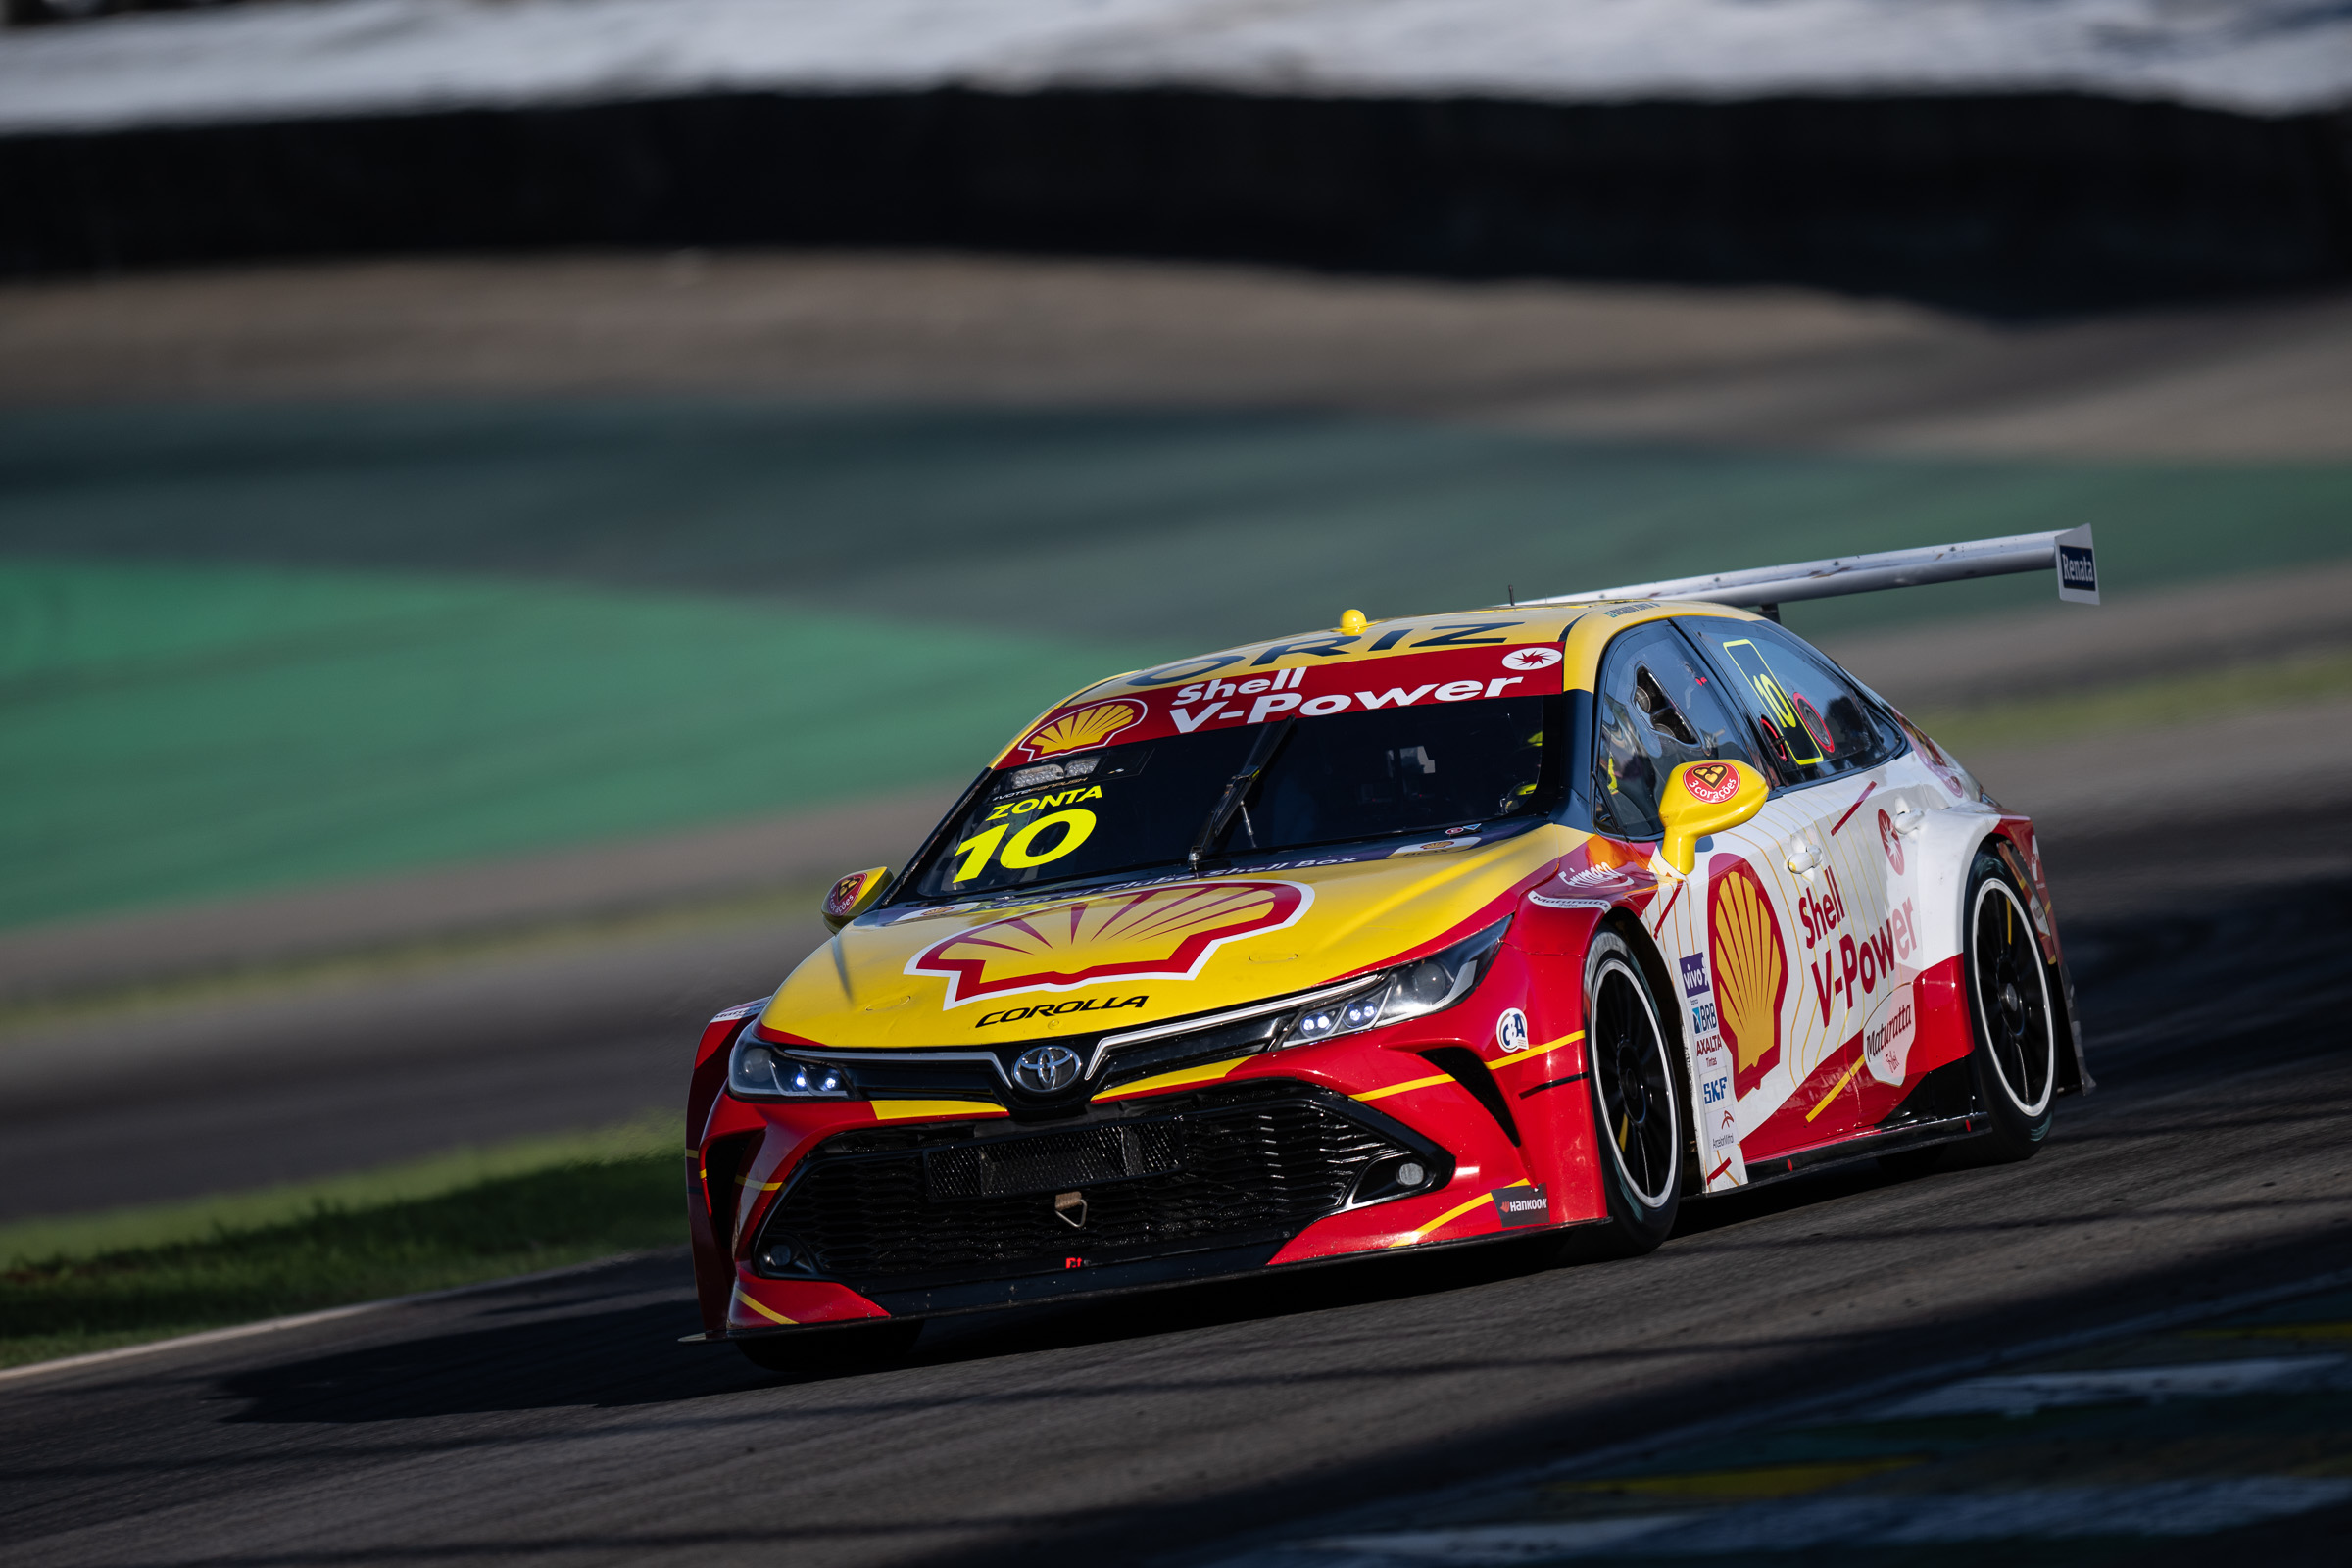 Melhor Toyota do grid, Ricardo Zonta coloca Shell na terceira posição da corrida principal da Stock Car em Interlagos